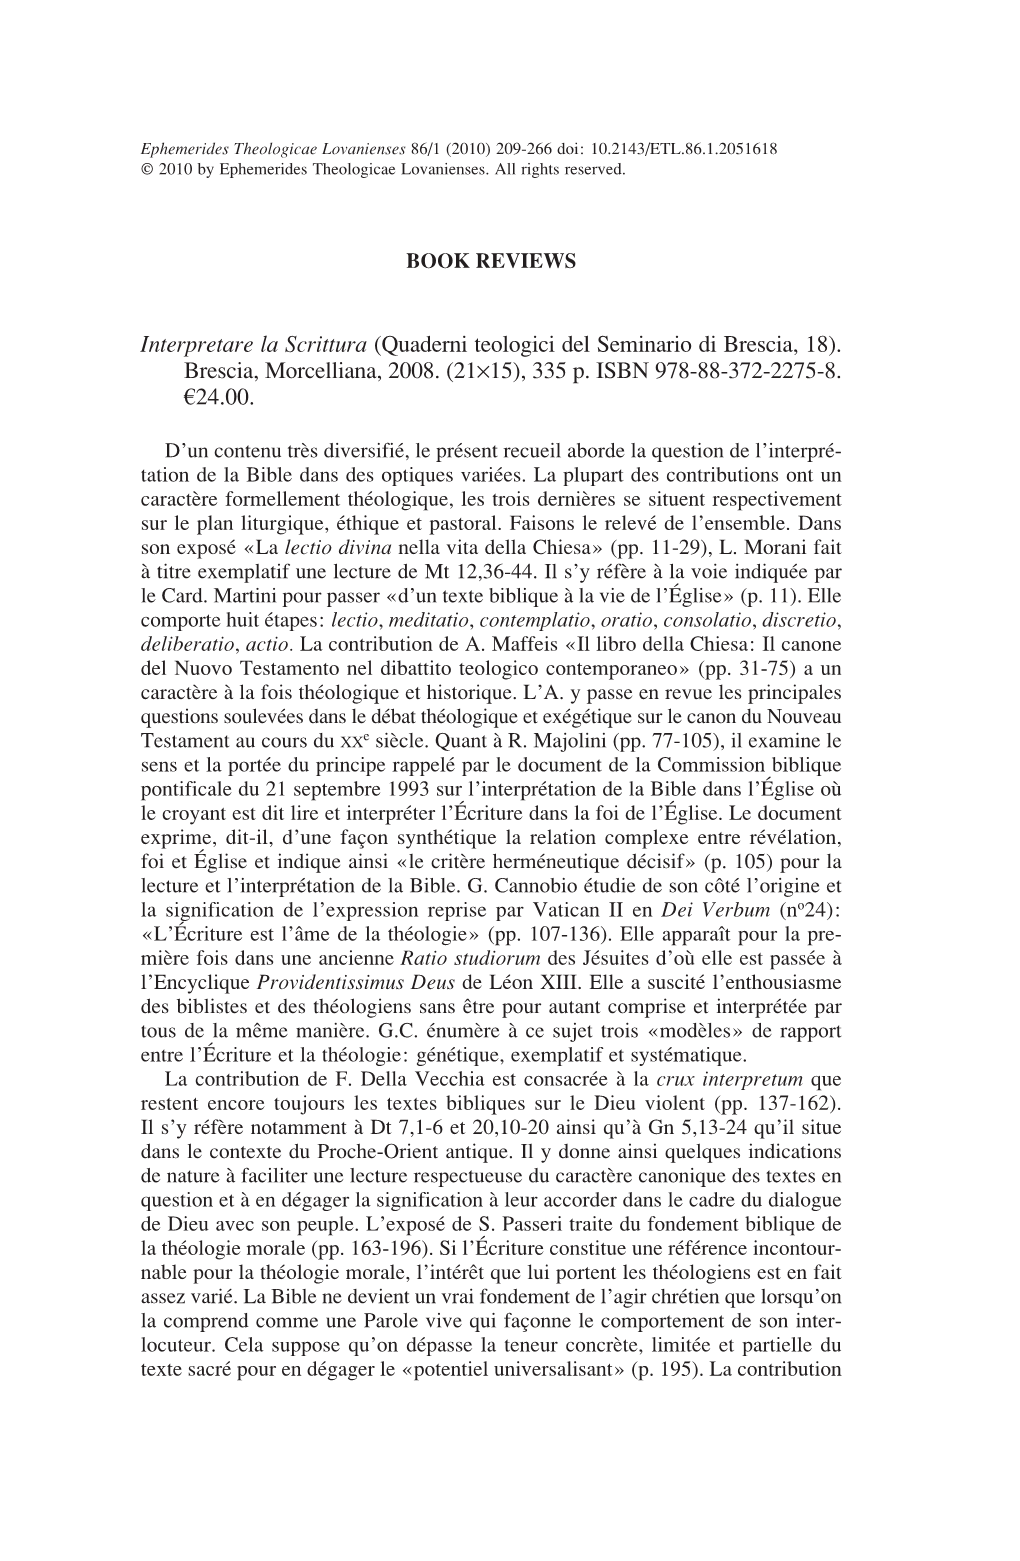 (Quaderni Teologici Del Seminario Di Brescia, 18). Brescia, Morcelliana, 2008